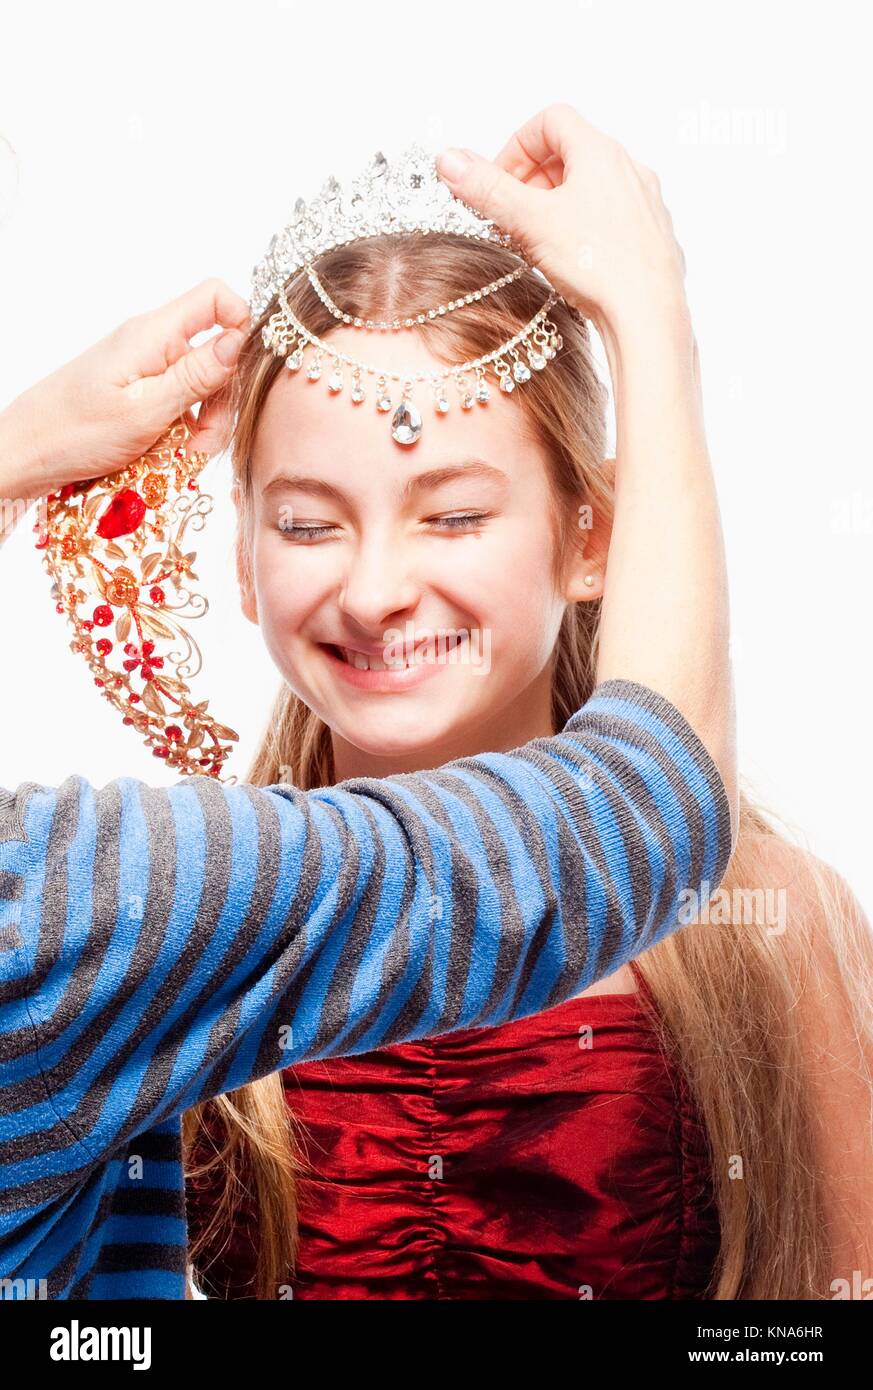 Mädchen mit blonden Haaren im roten Kleid gerade eine Krone auf dem Kopf. Stockfoto